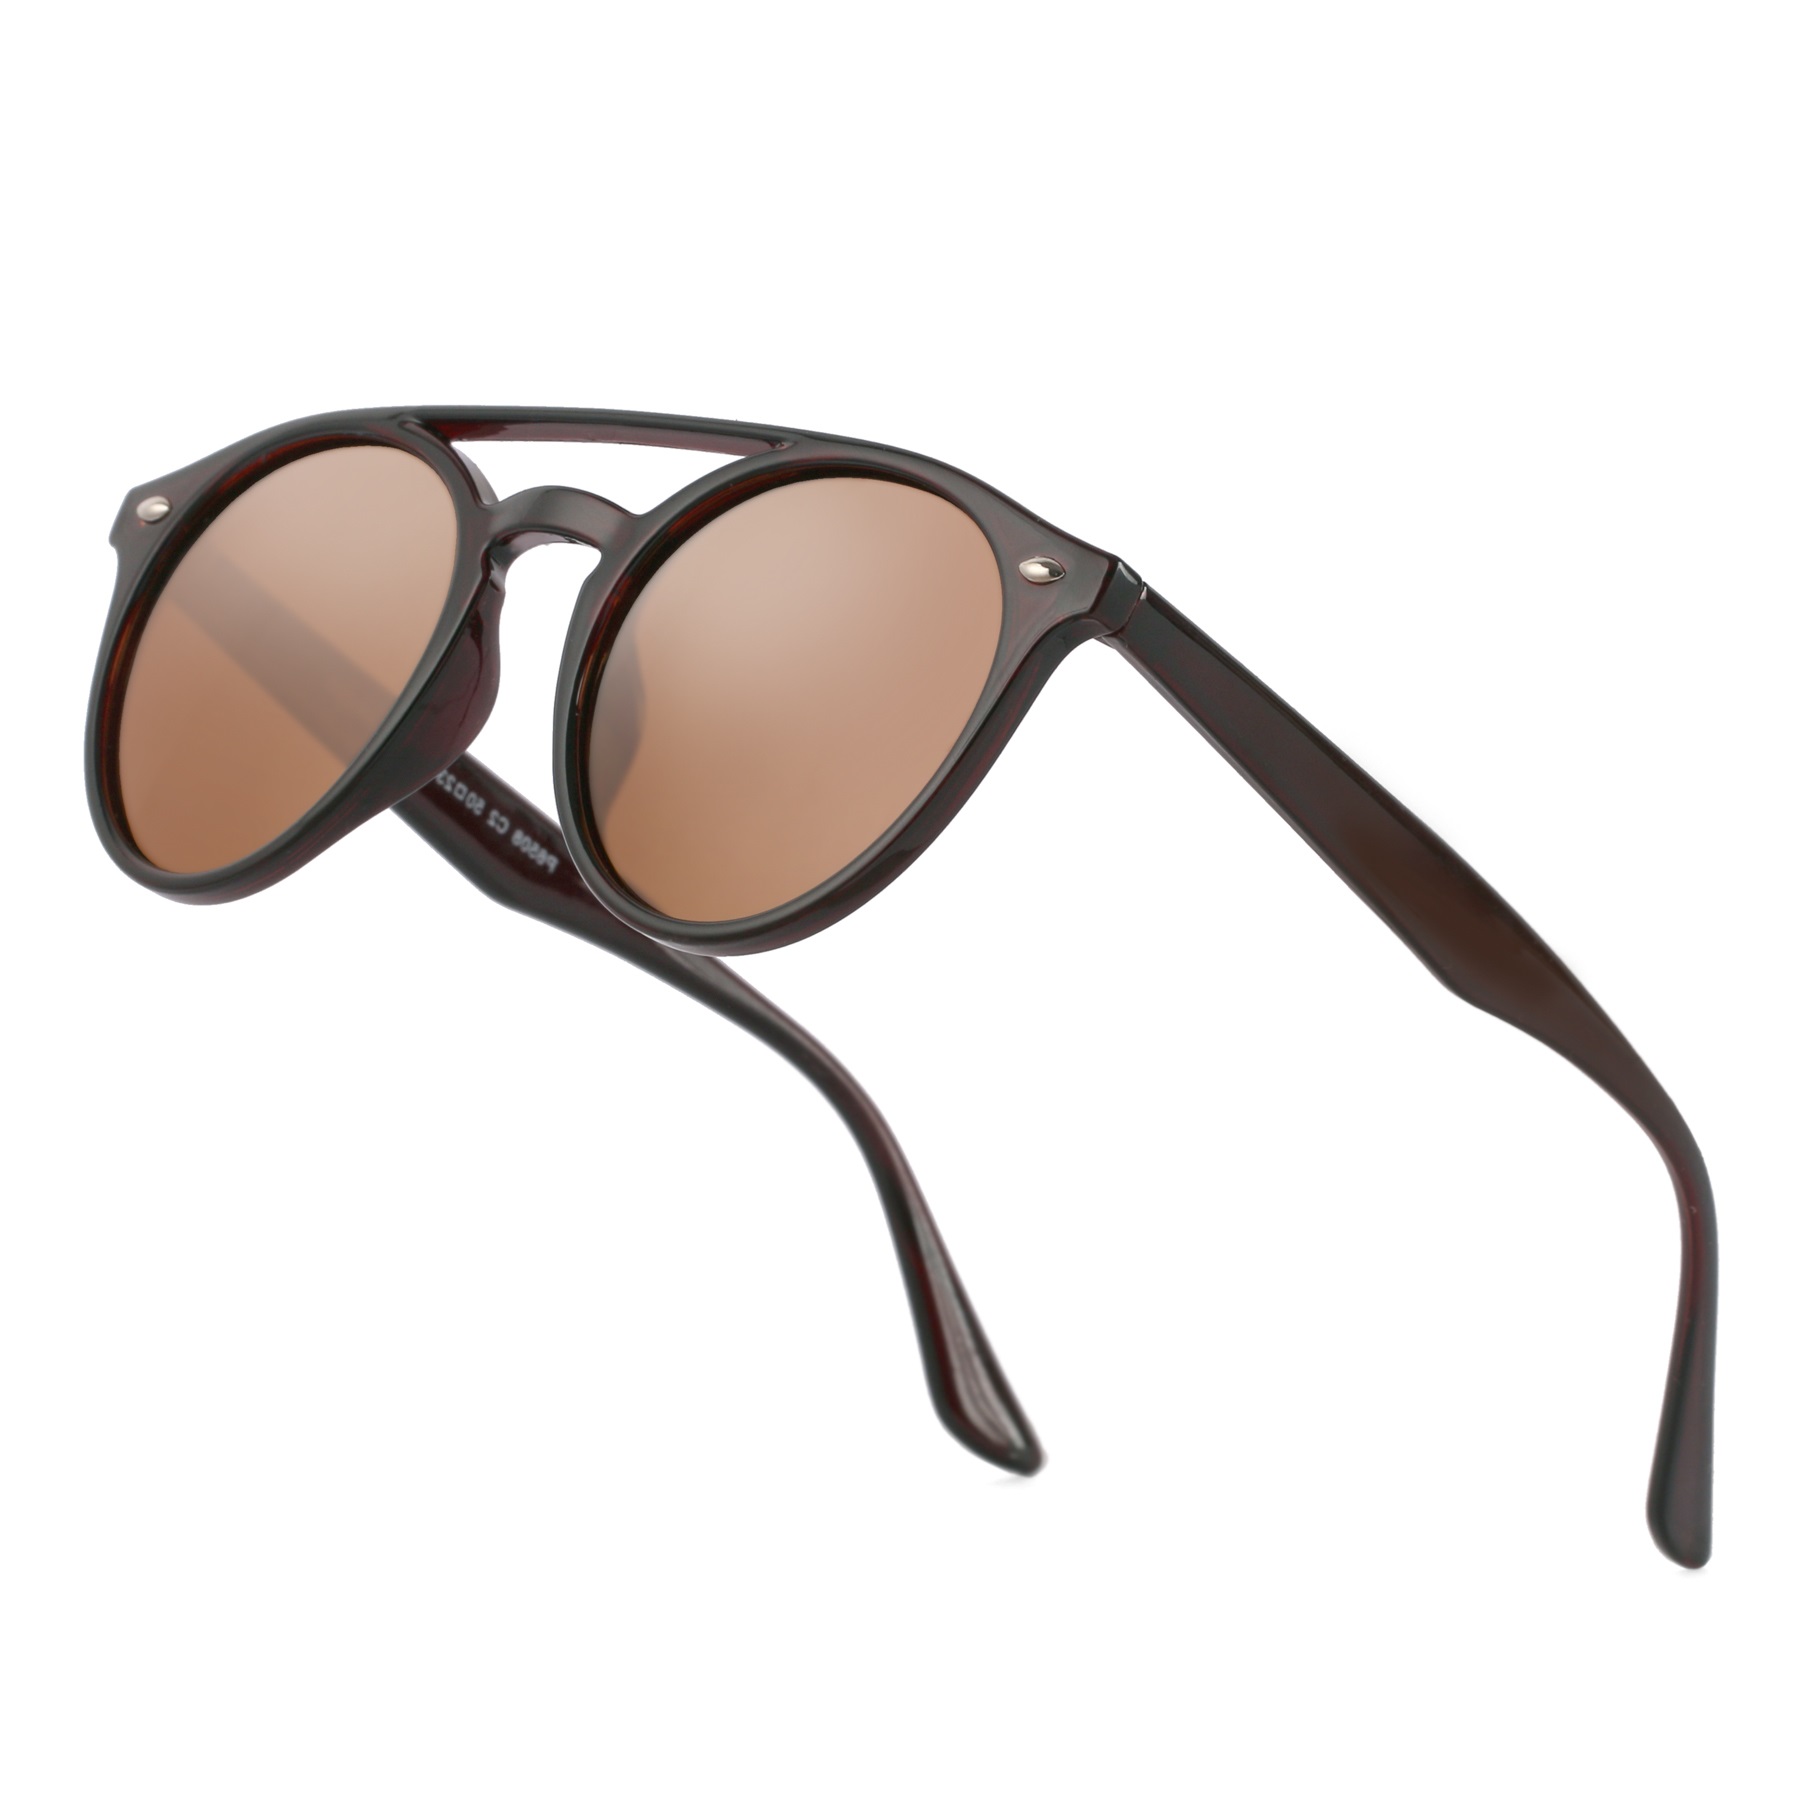 Details 151+ trendy sunglasses for men latest